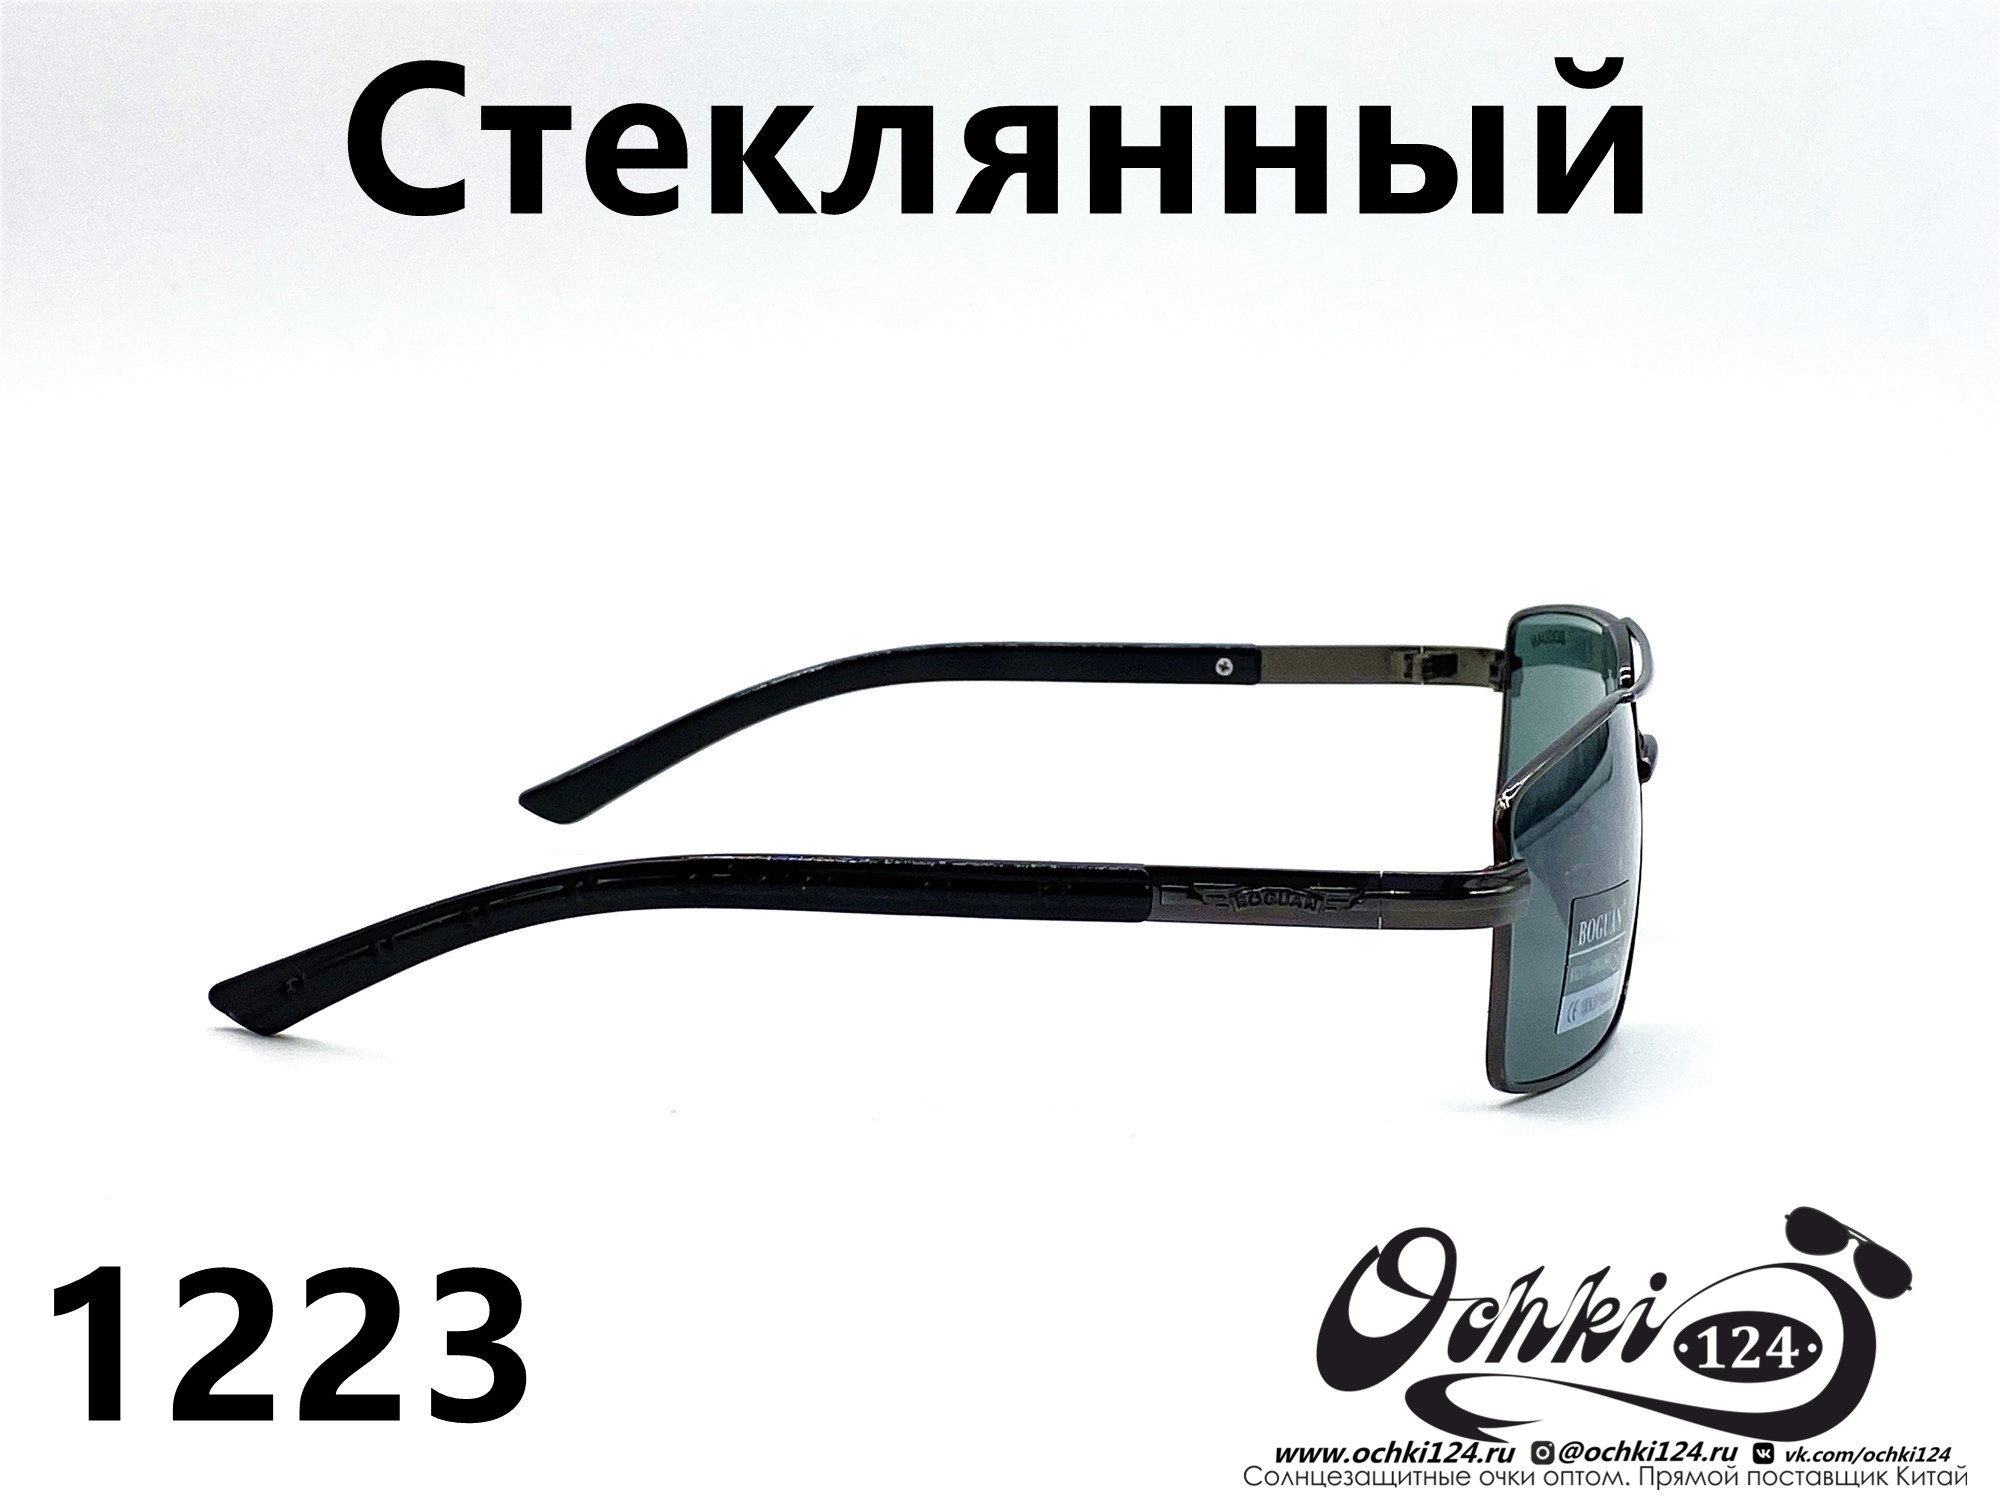  Солнцезащитные очки картинка 2022 Мужские Стеклянные Квадратные Boguan 1223-3 